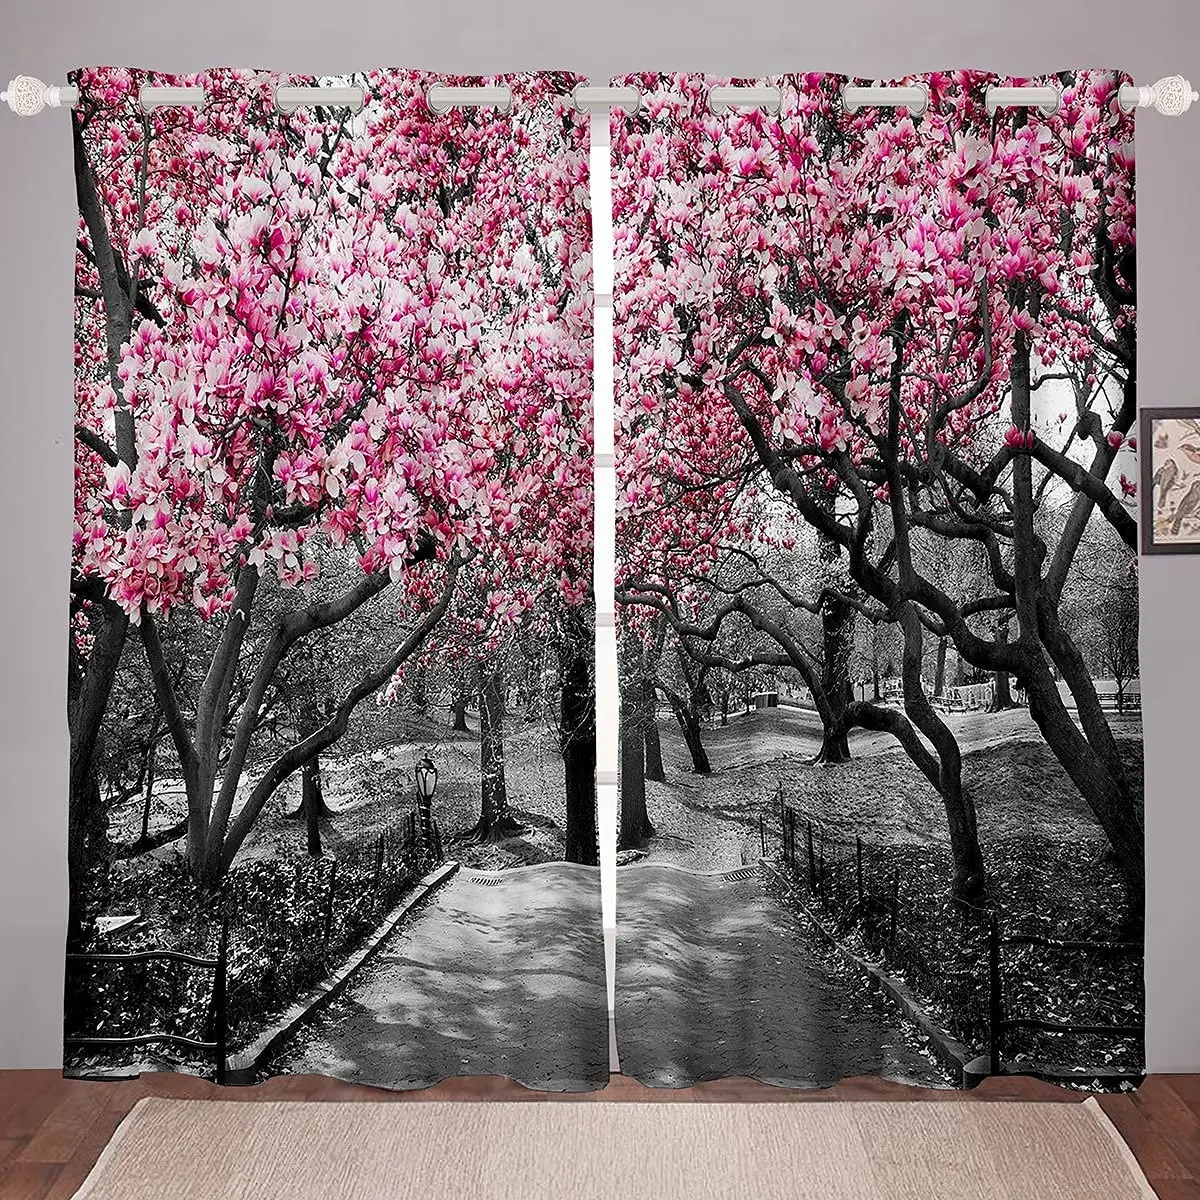 

Шторы светонепроницаемые с розовыми цветами, украшение для гостиной с изображением вишневого дерева, двух спален и цветов, роскошные для гостиной